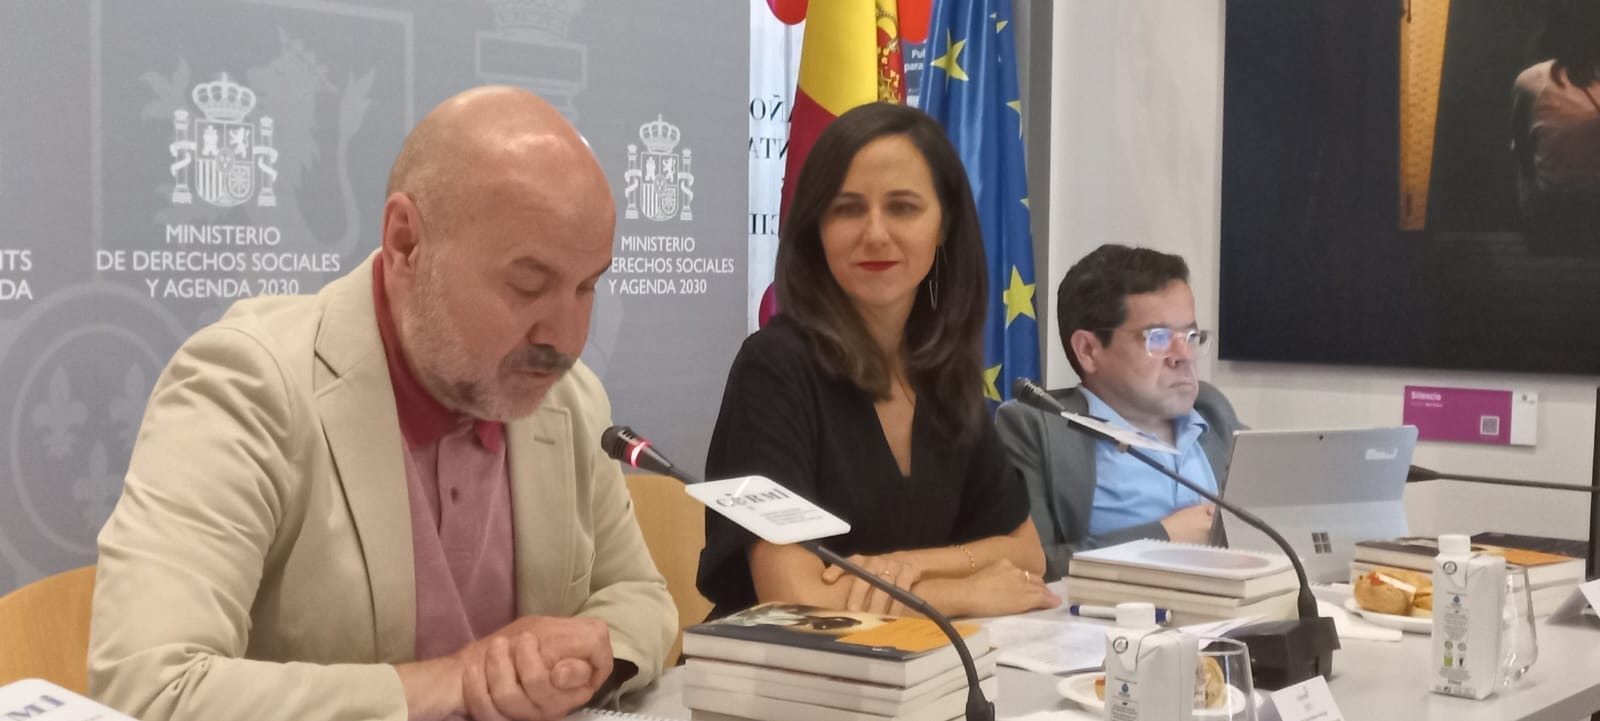 Ir a Plena inclusión espera que el Plan de Acción de la Estrategia Española del Espectro Autista se despliegue en todo el país y se abra a la participación